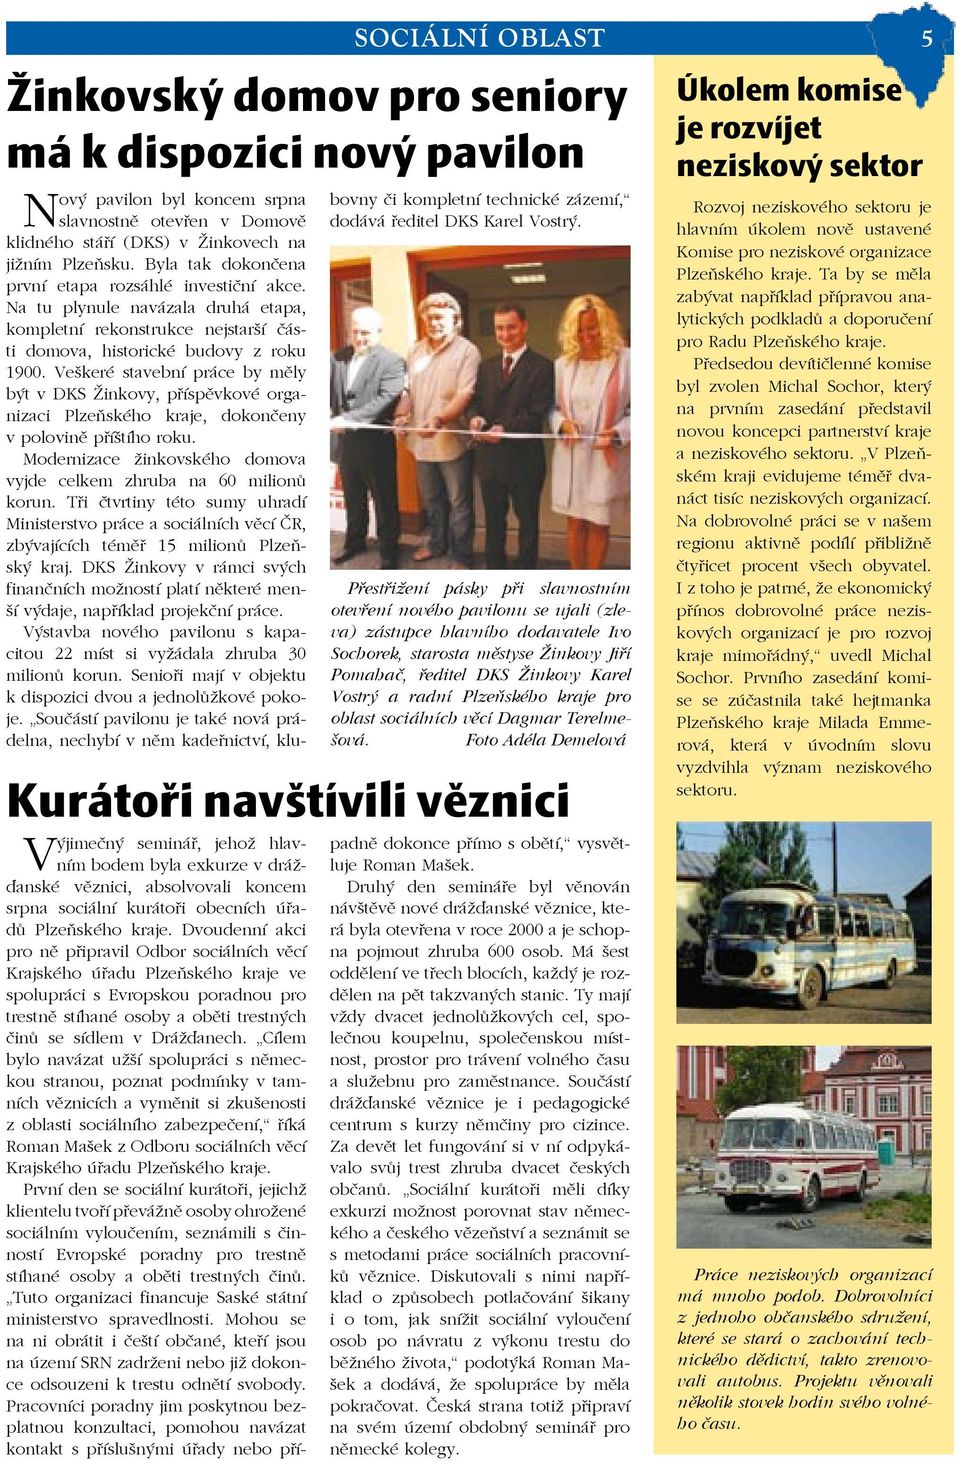 Veškeré stavební práce by měly být v DKS Žinkovy, příspěvkové organizaci Plzeňského kraje, dokončeny v polovině příštího roku. Modernizace žinkovského domova vyjde celkem zhruba na 60 milionů korun.